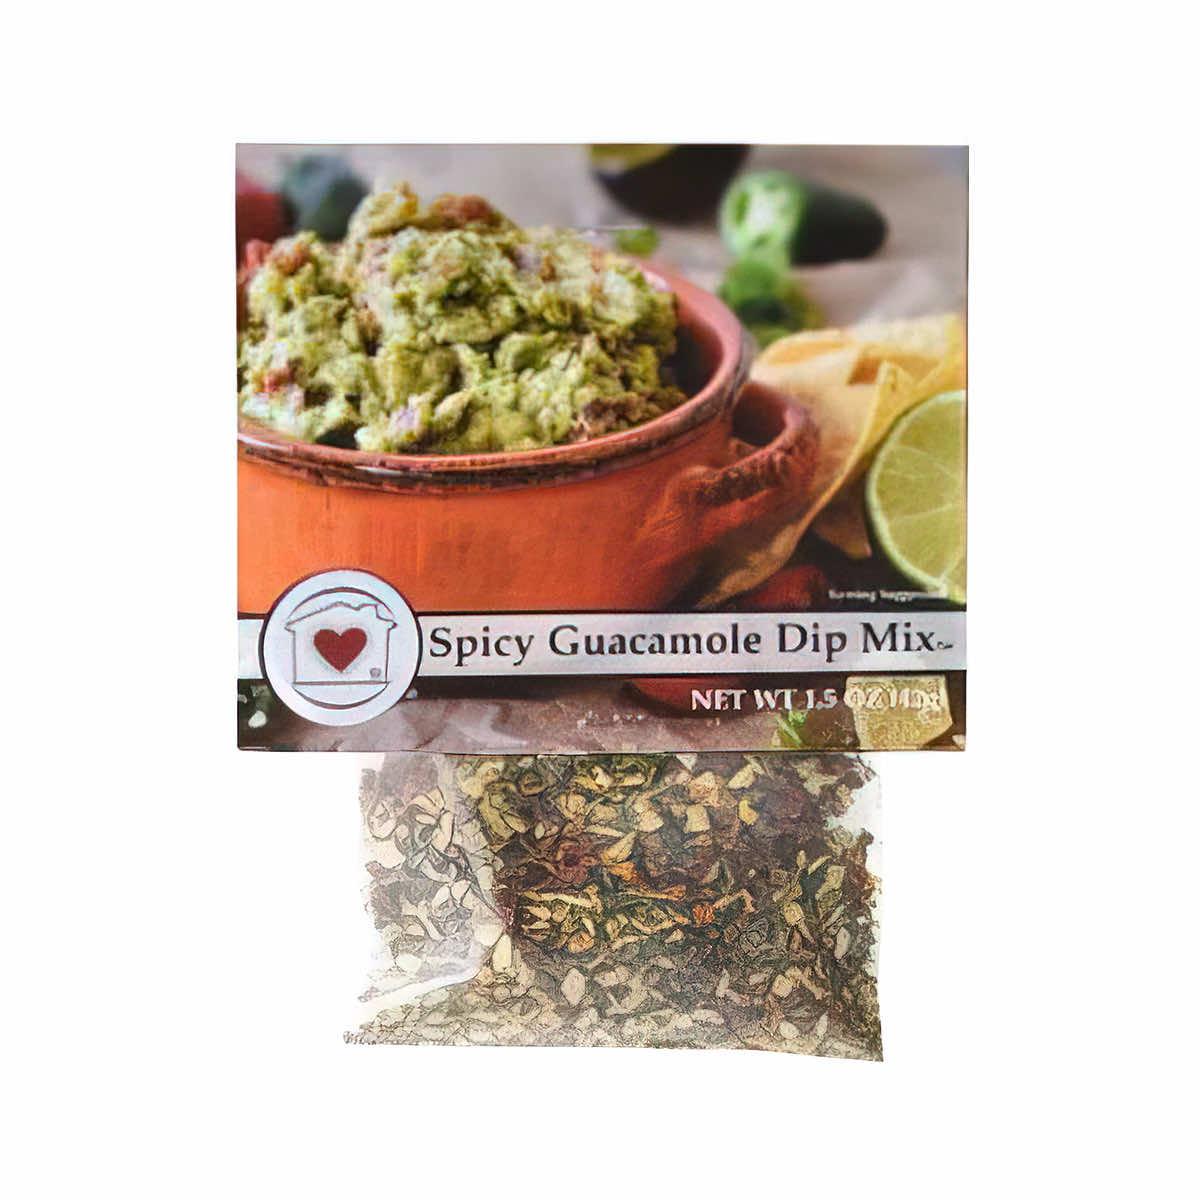  Spicy Guacamole Dip Mix